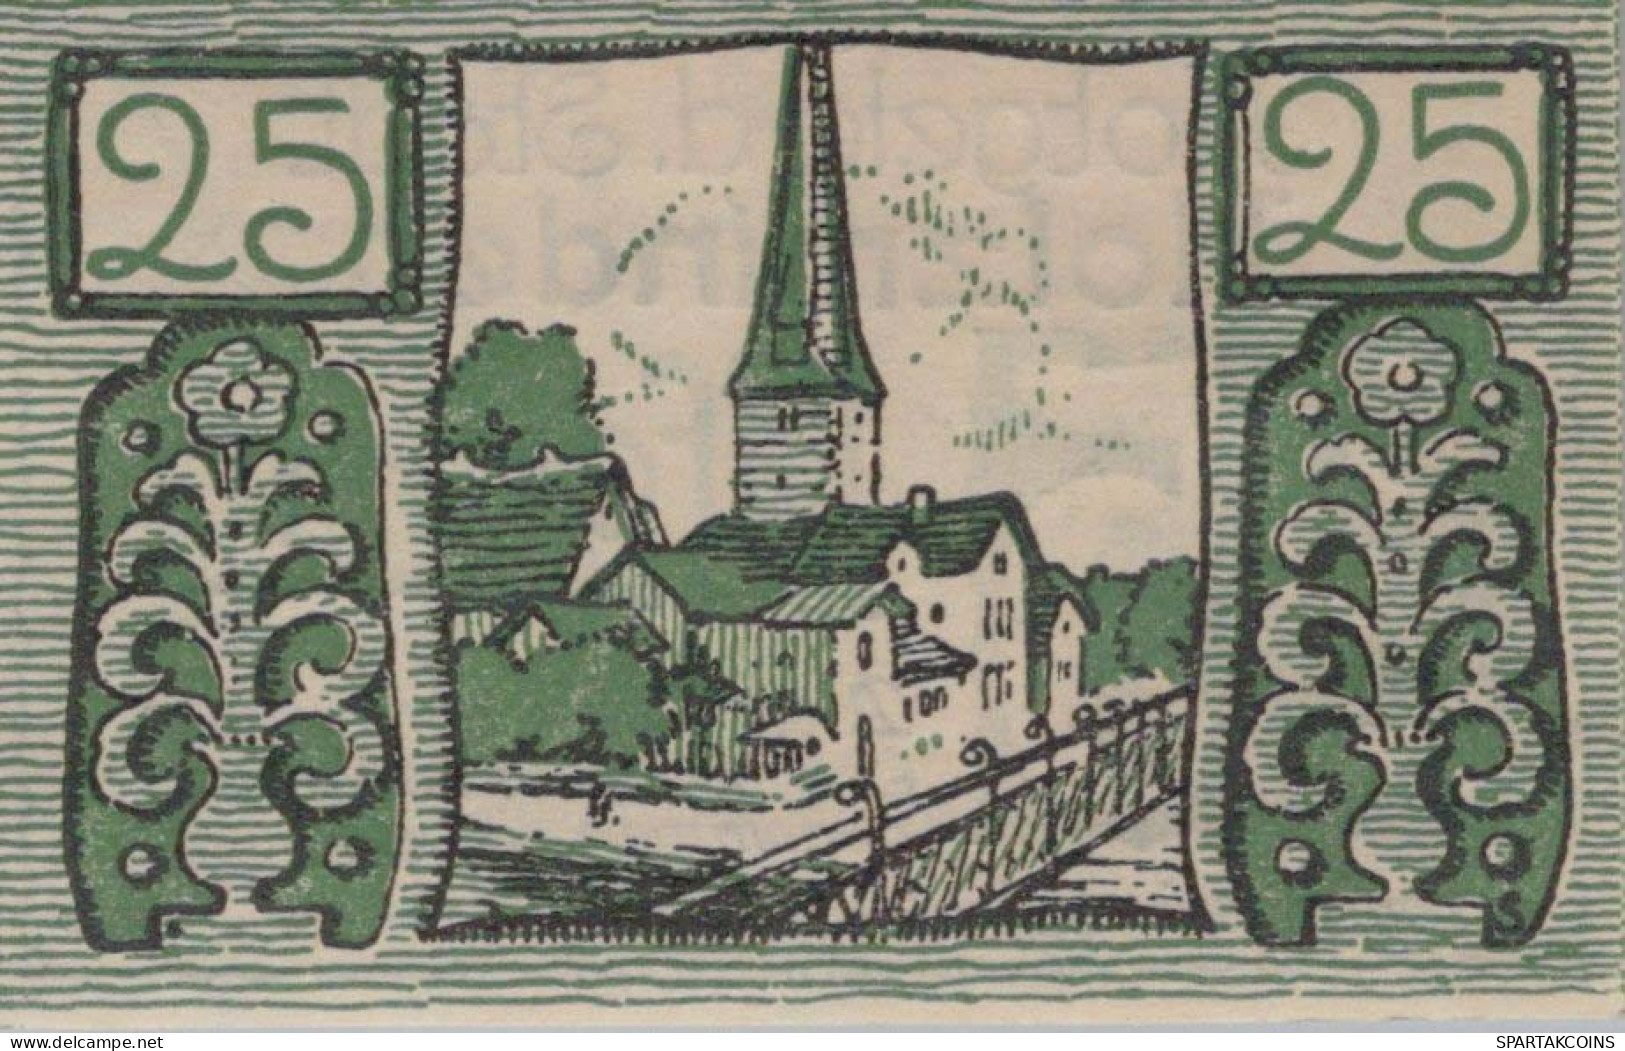 25 PFENNIG 1922 Stadt HOLZMINDEN Brunswick DEUTSCHLAND Notgeld Banknote #PG399 - [11] Local Banknote Issues